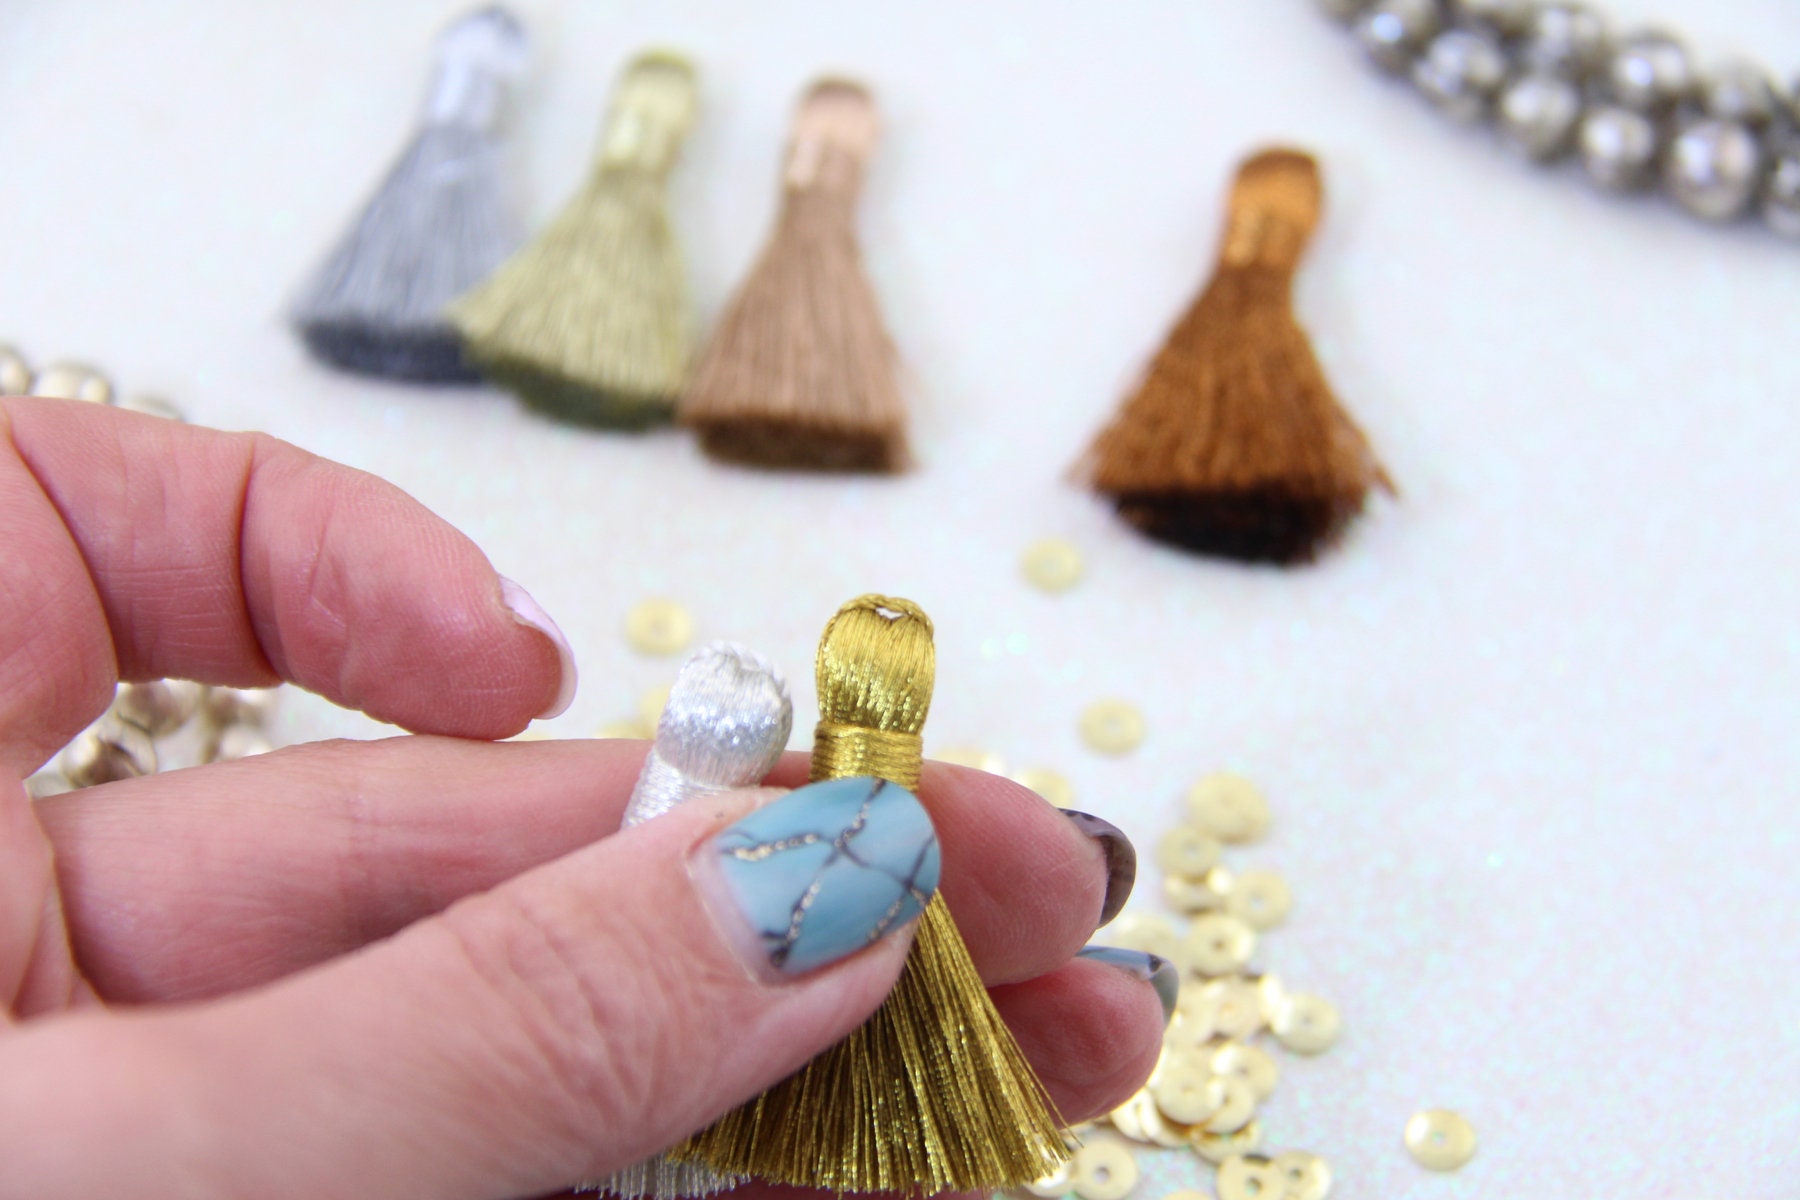 Metallic Tassels: 1.25 Handmade Tassels for Making Earrings/Jewelry